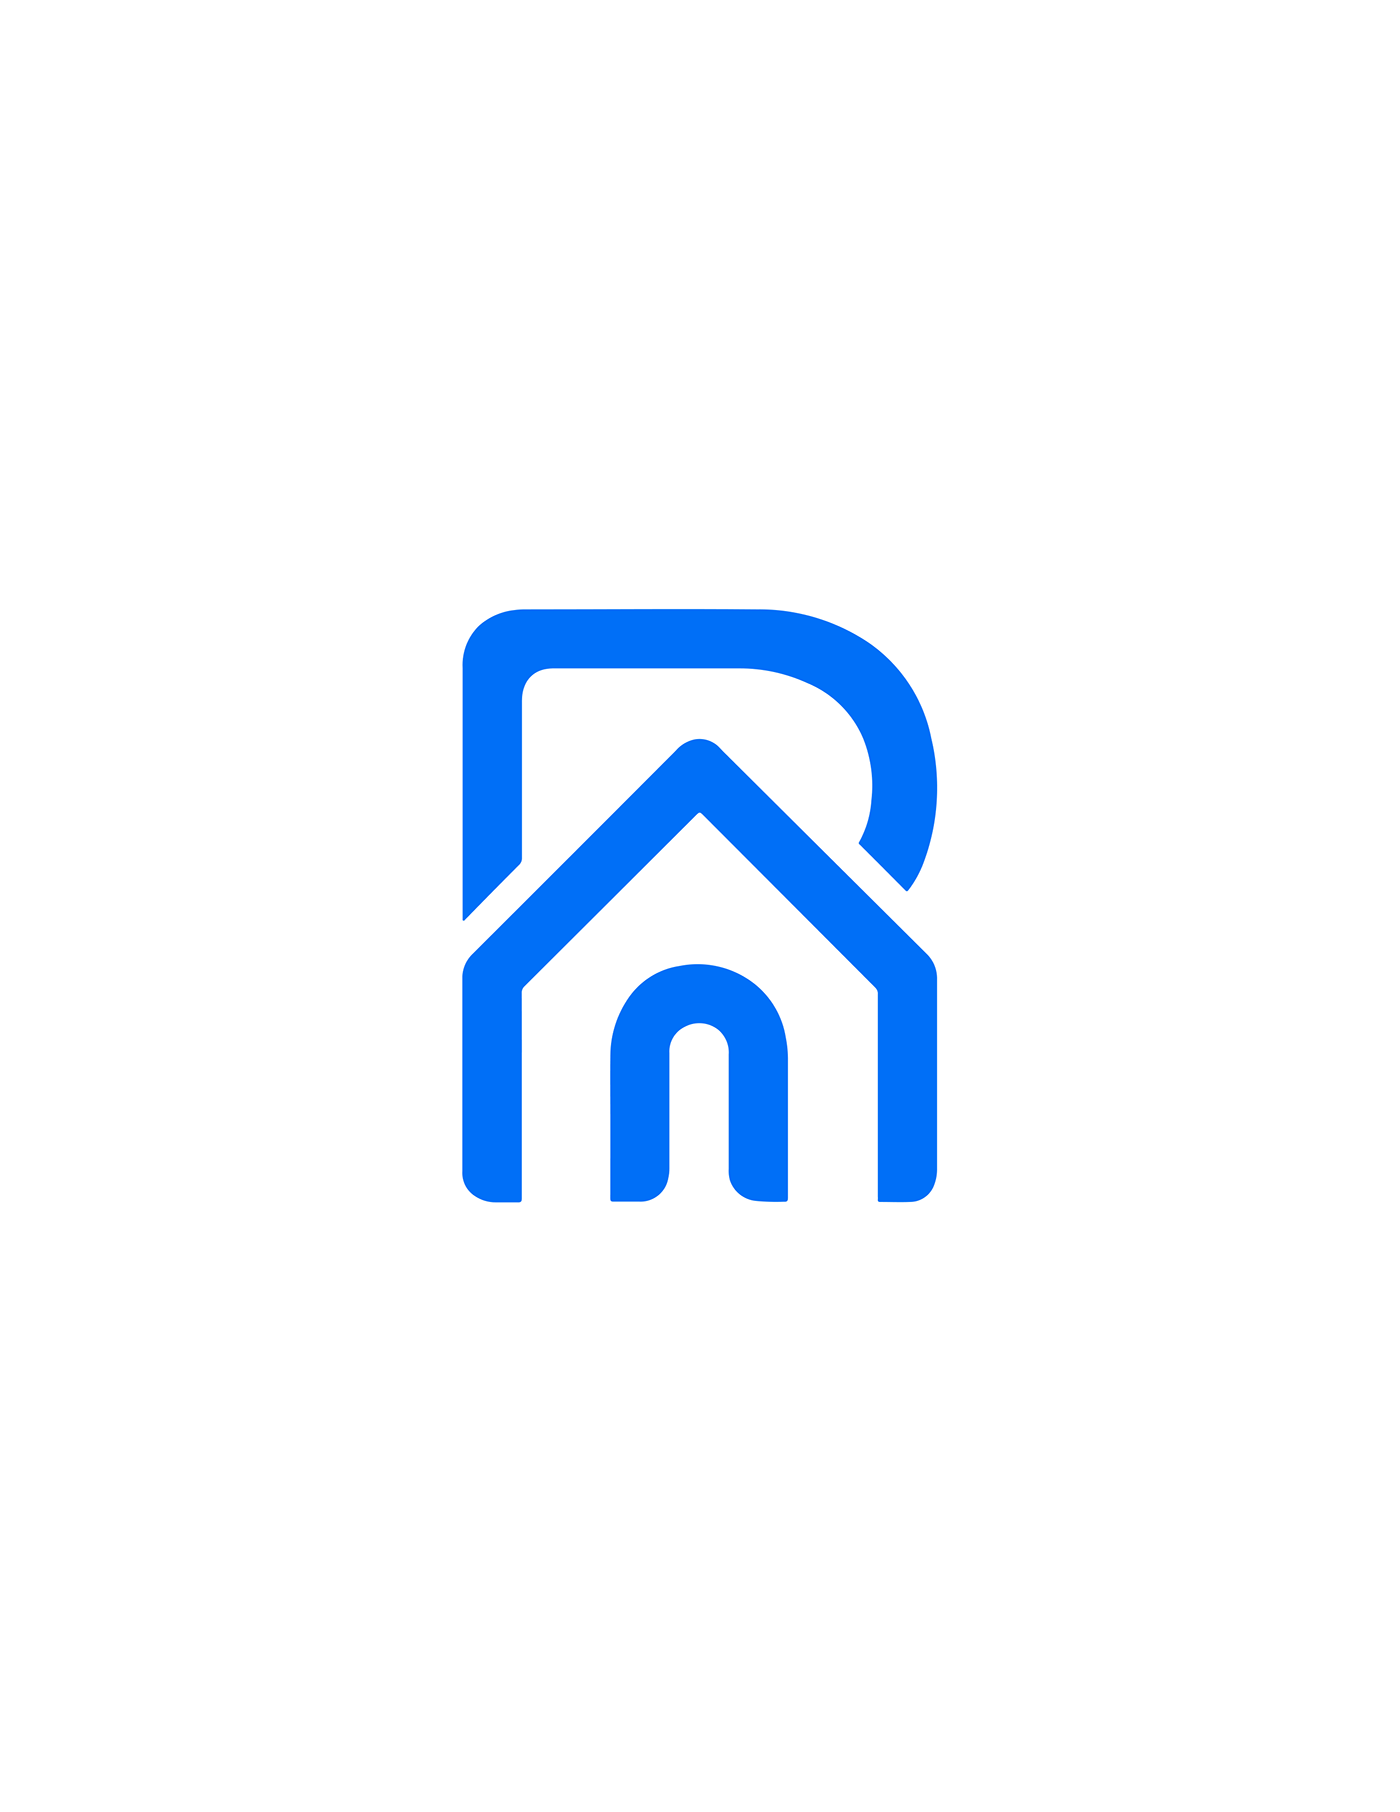 Real estate logo logo brand identity Logo Design adobe illustrator vector visual identity identity brand